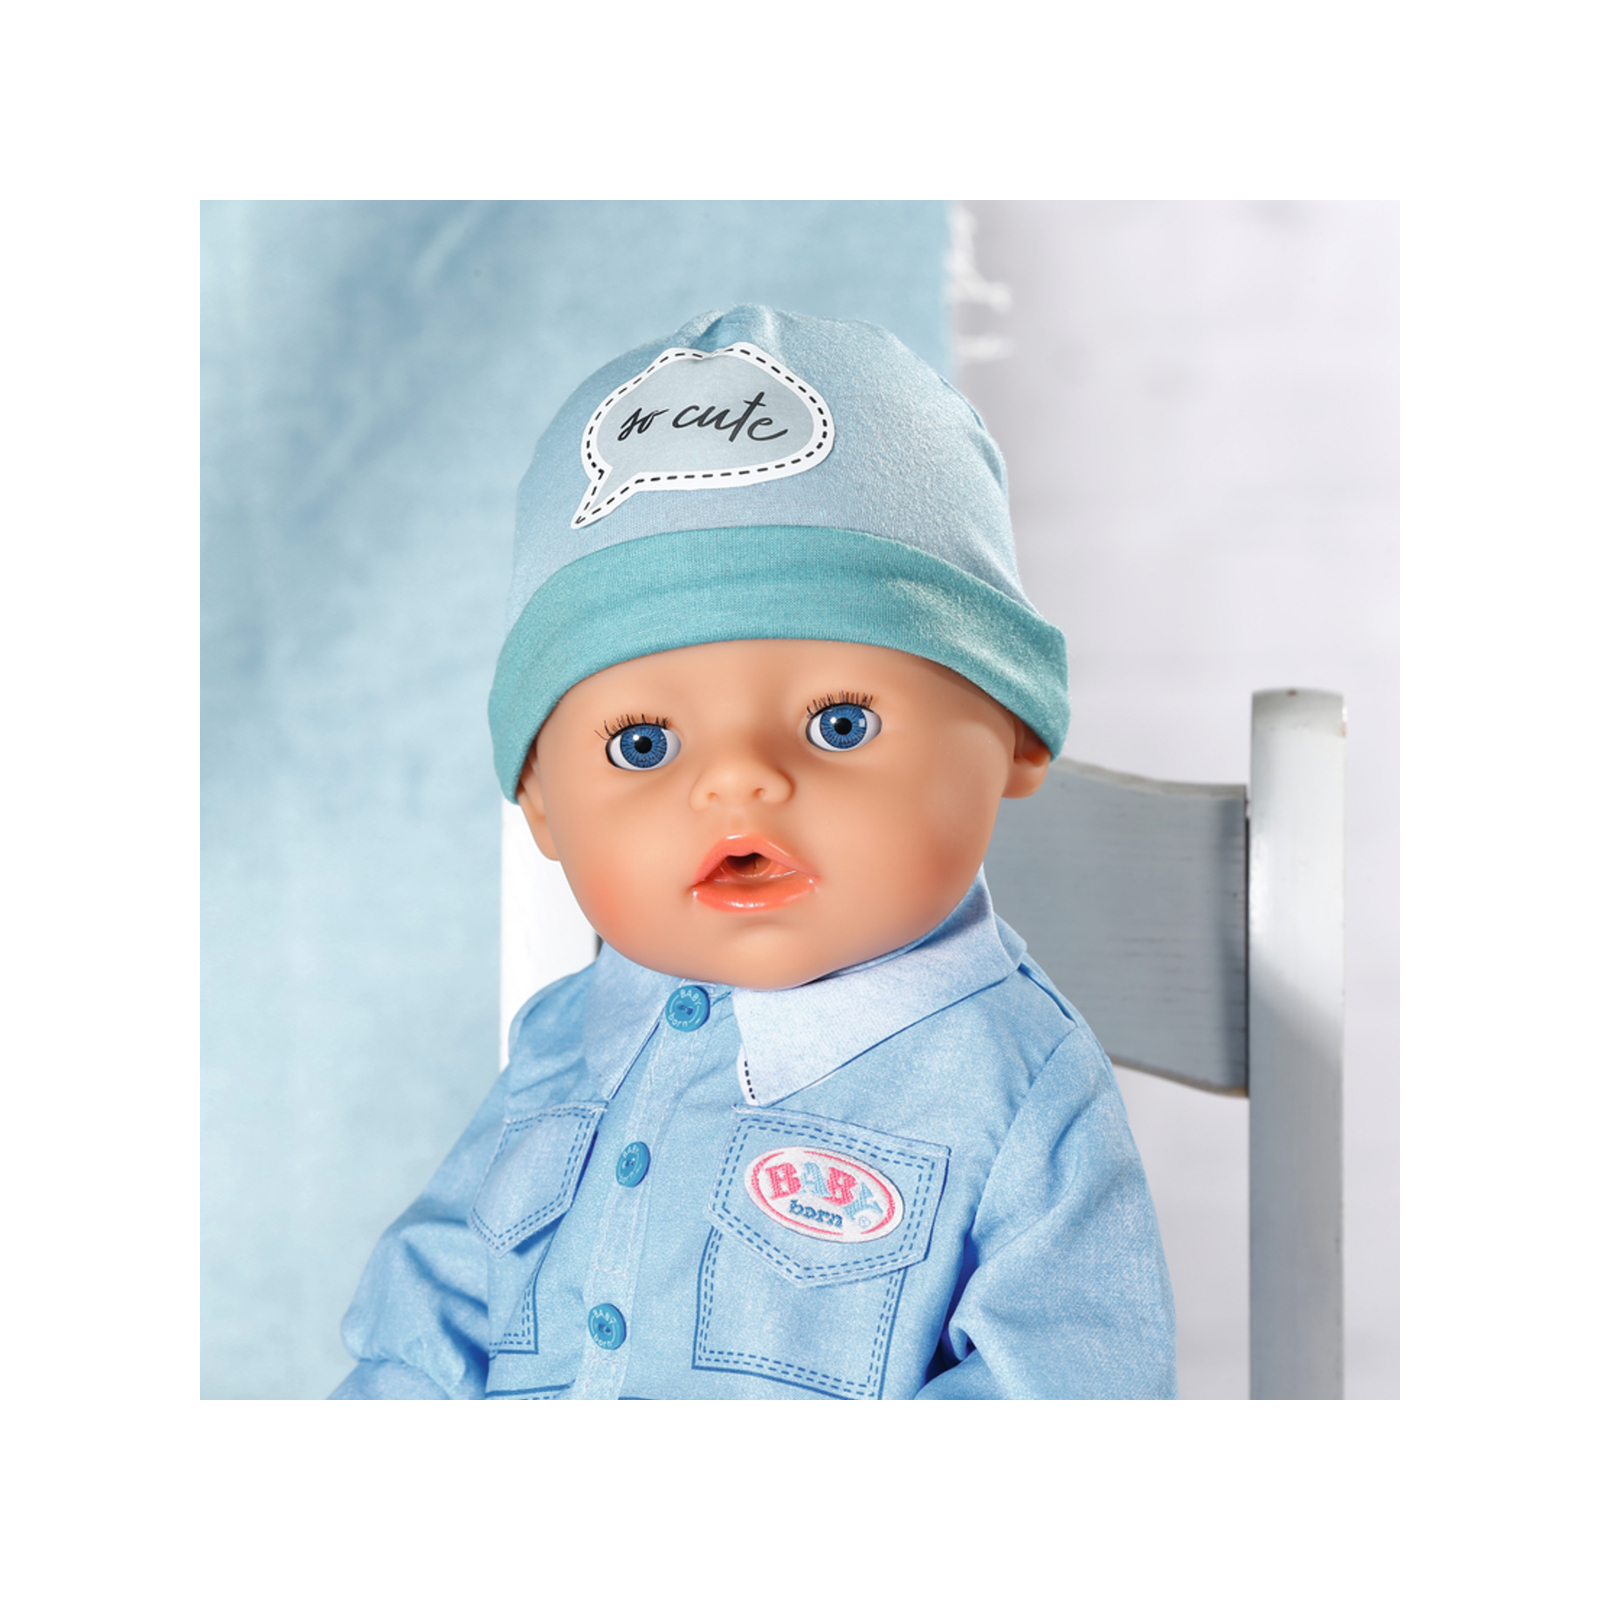 Аксессуар к кукле Zapf Одежда для куклы Baby Born Джинсовый стиль (832592) изображение 8